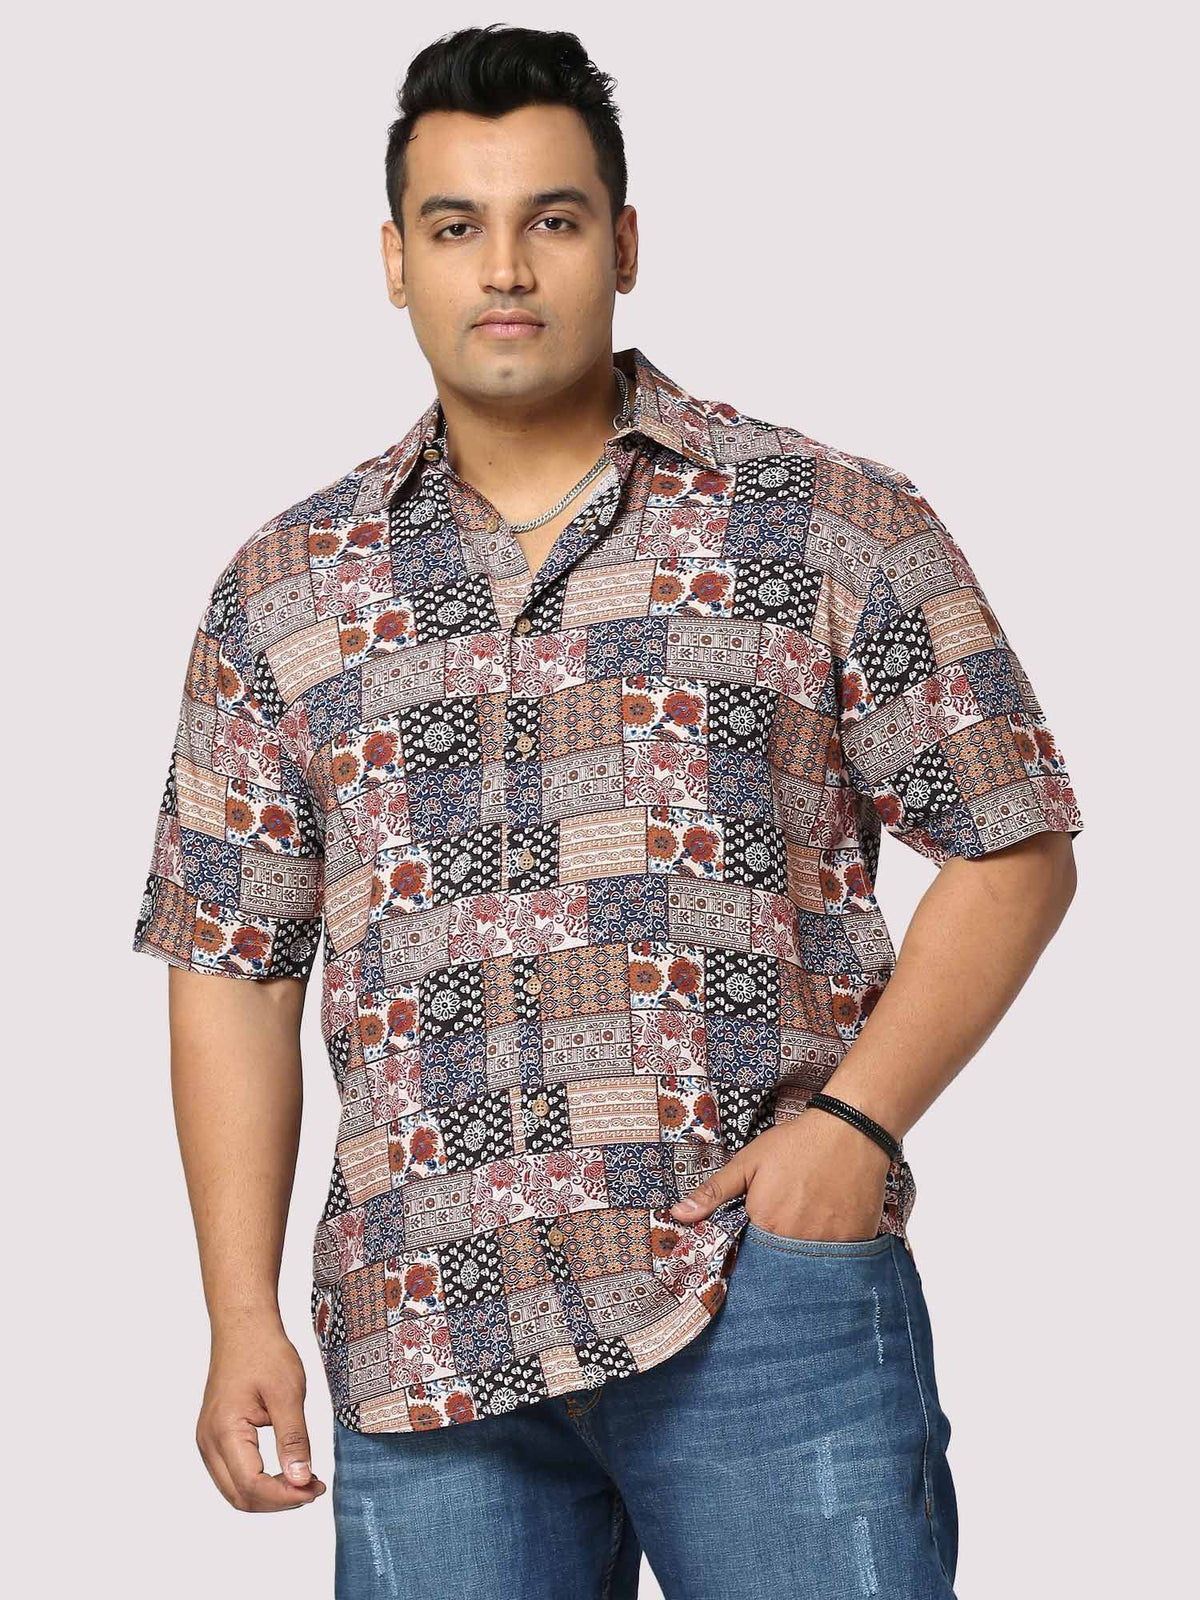 Harmony Digital Printed Half Shirt Men's Plus Size - Guniaa Fashions